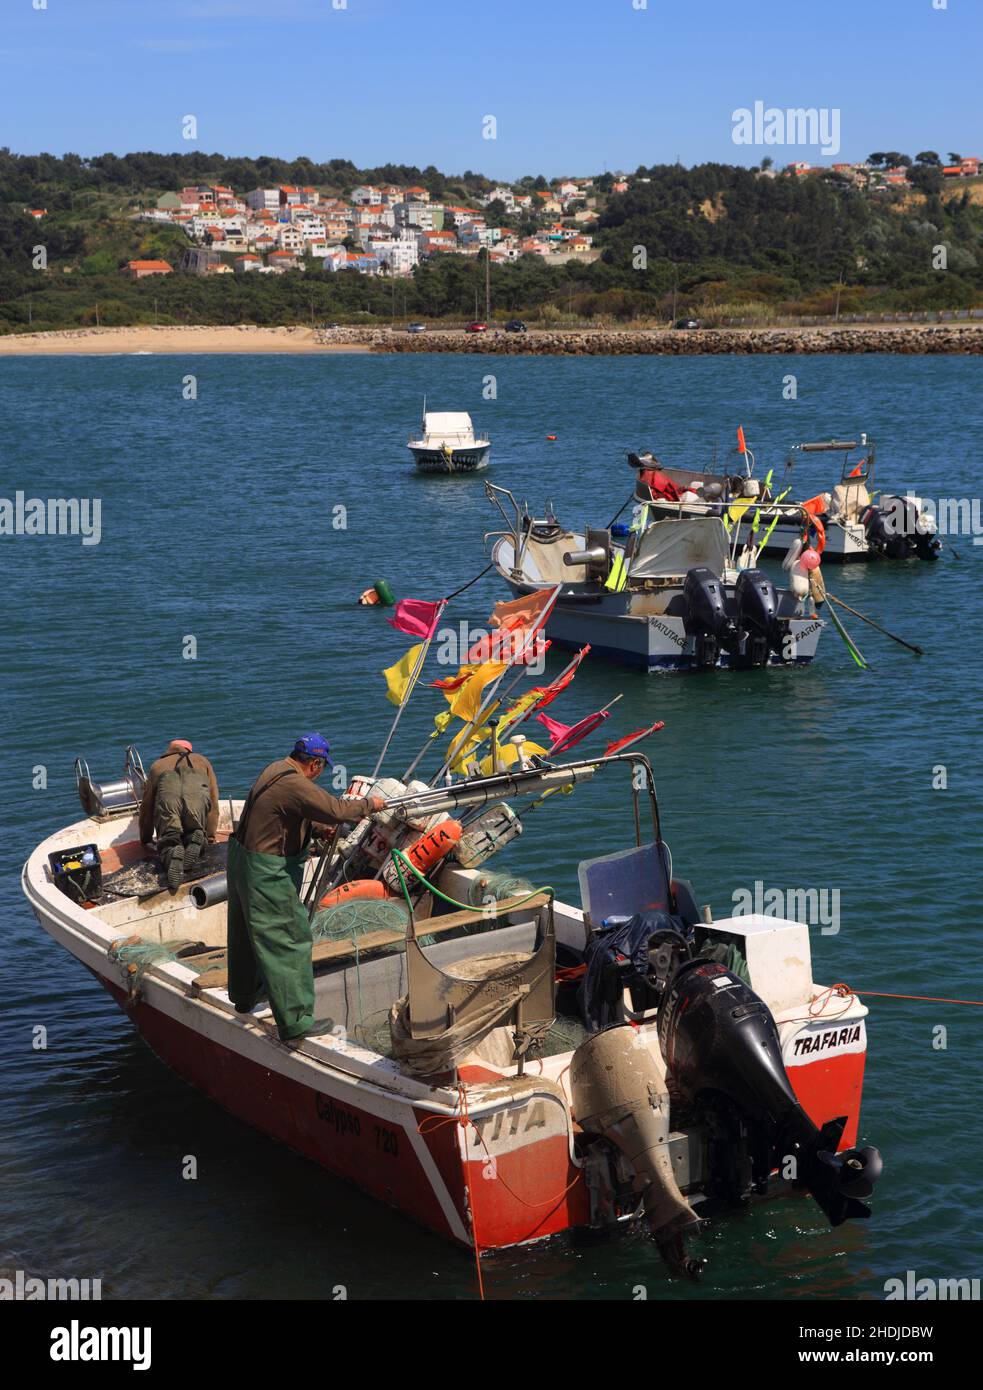 Un equipaggio di pescatori costieri prepara la propria barca per il mare nel piccolo porto di Traferia, sull'estuario del fiume Tago. Il mese di aprile Foto Stock